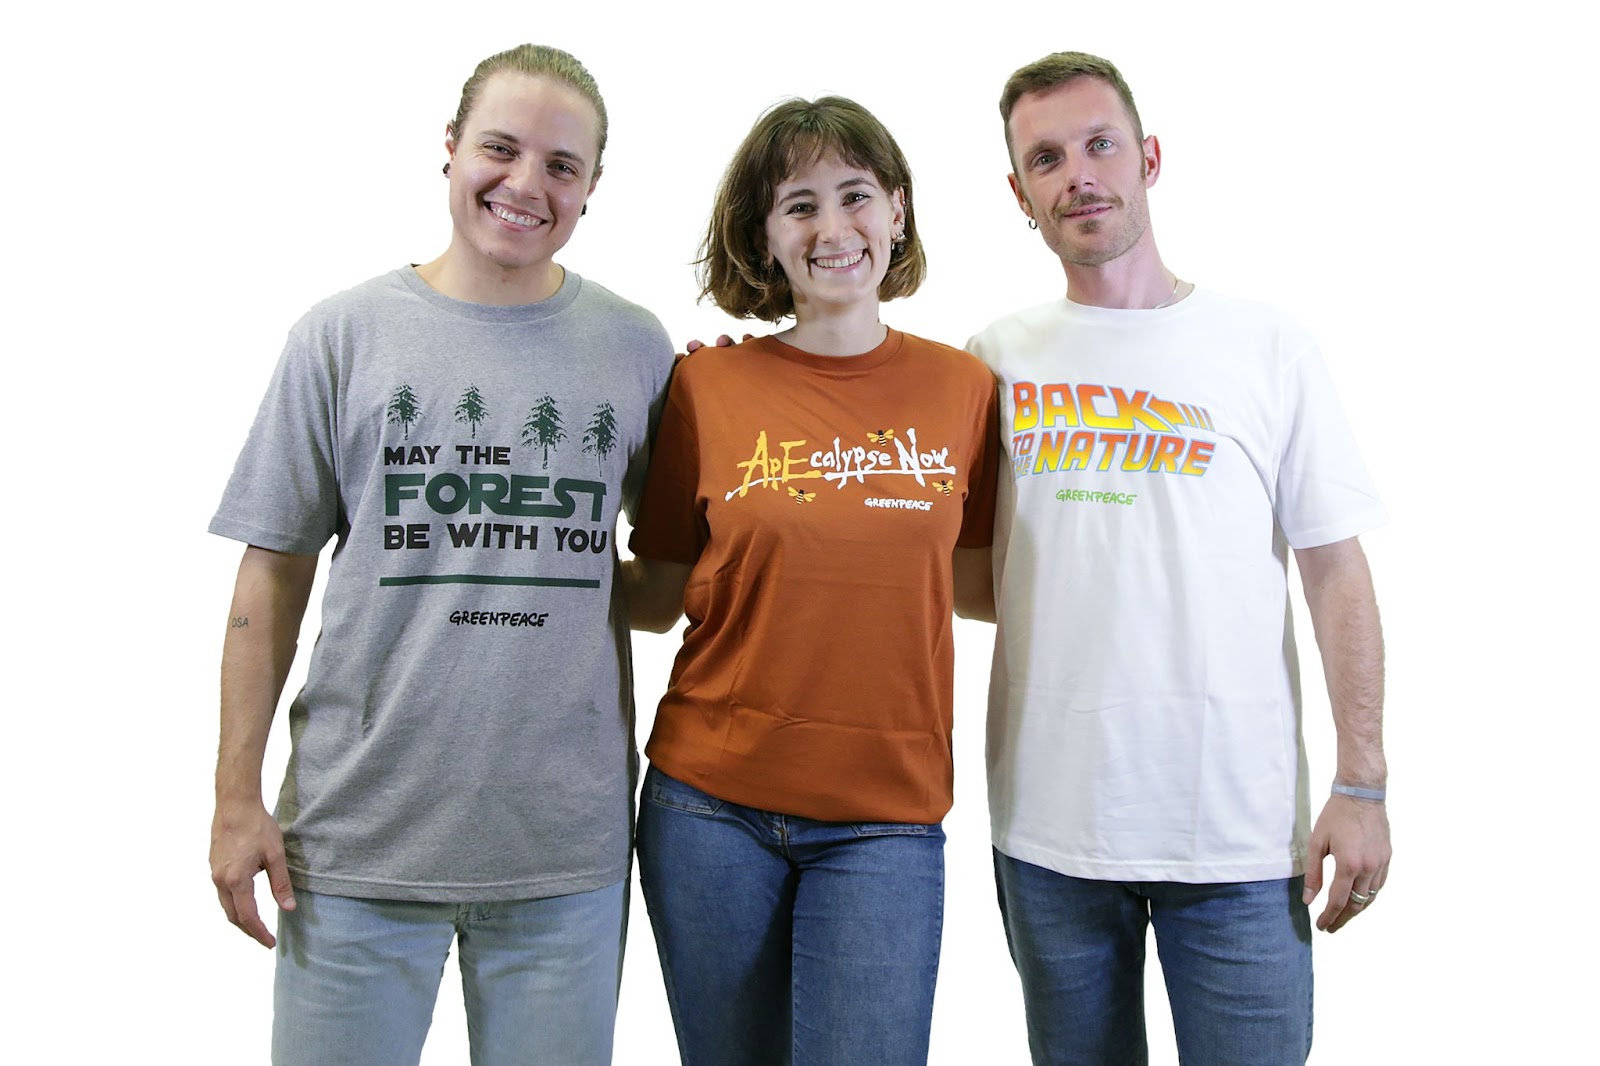 Scopri le t-shirt sul nostro shop: nuove idee, stessa qualità! - Greenpeace  Italia